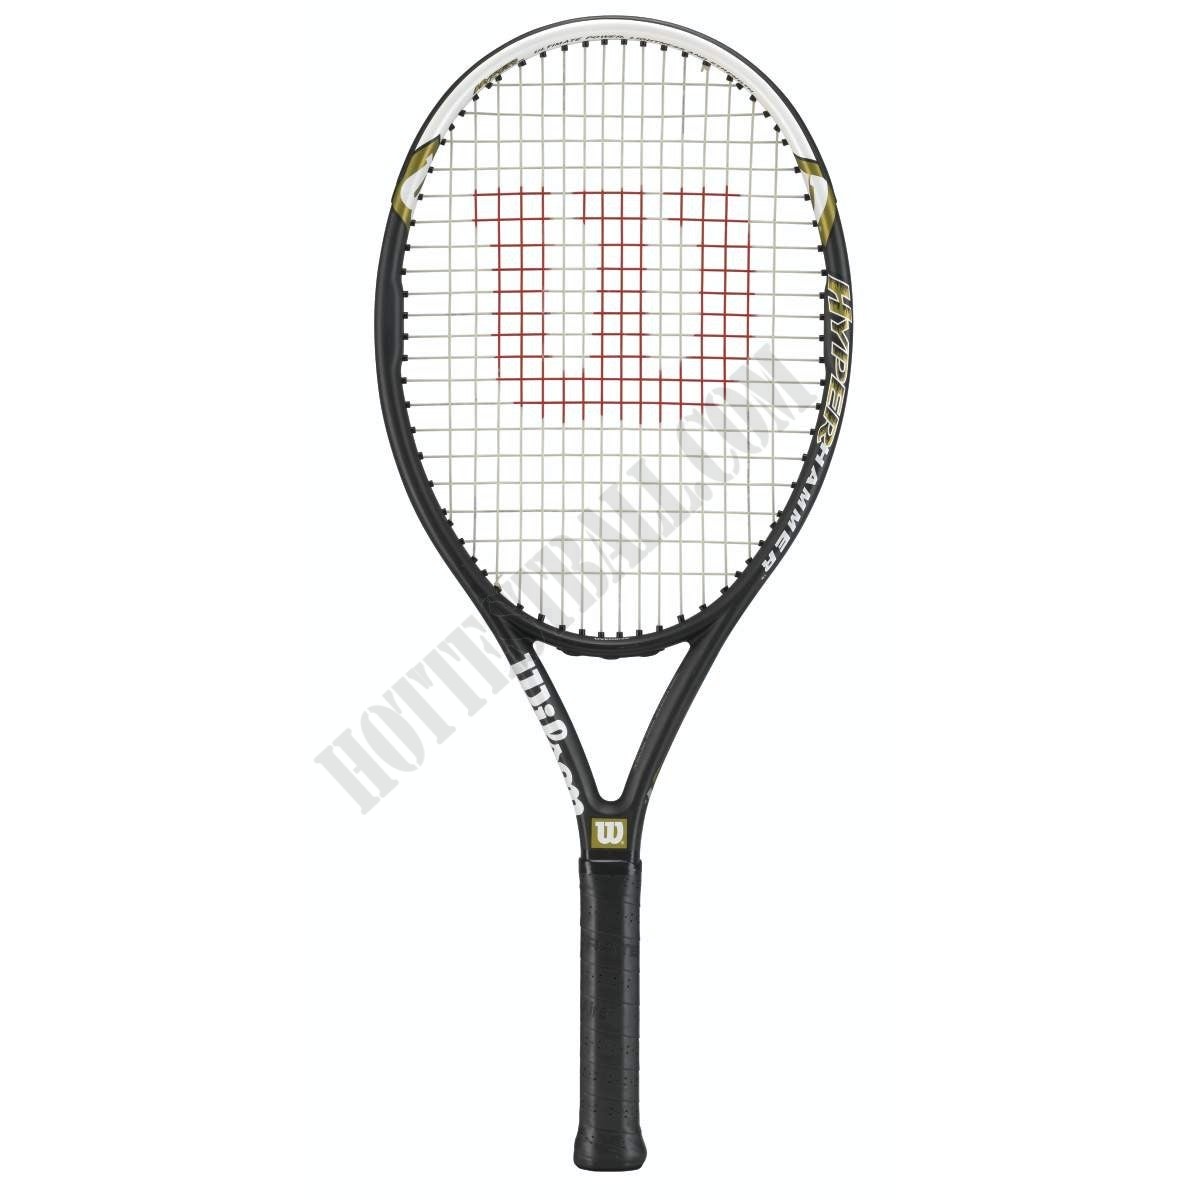 Hyper Hammer 5.3 Tennis Racket - Wilson Discount Store - -0